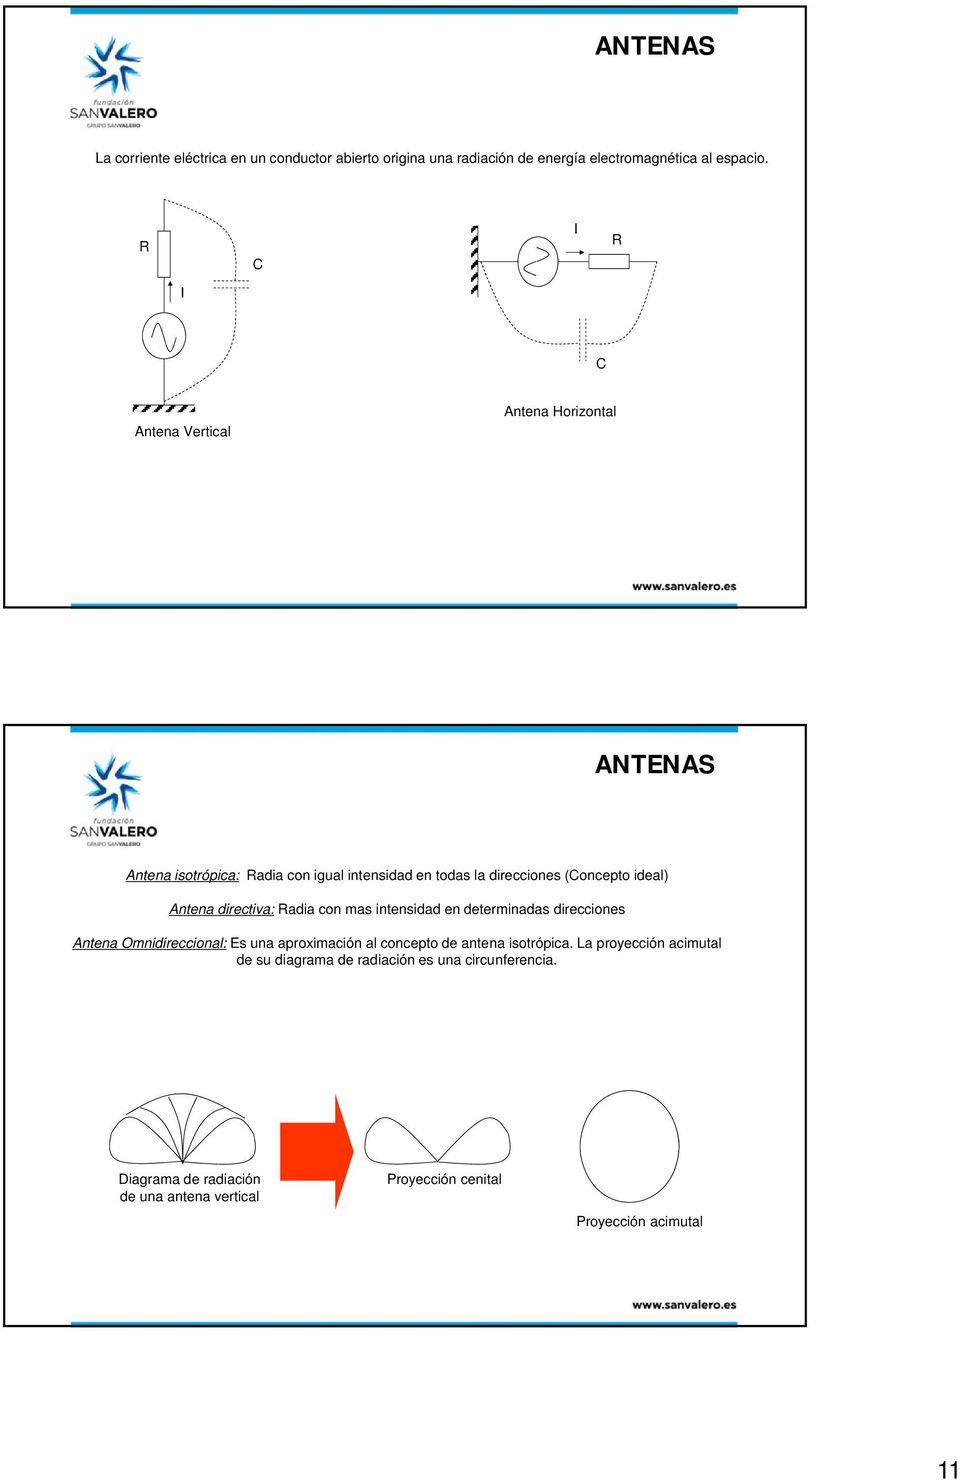 Antena directiva: Radia con mas intensidad en determinadas direcciones Antena Omnidireccional: Es una aproximación al concepto de antena